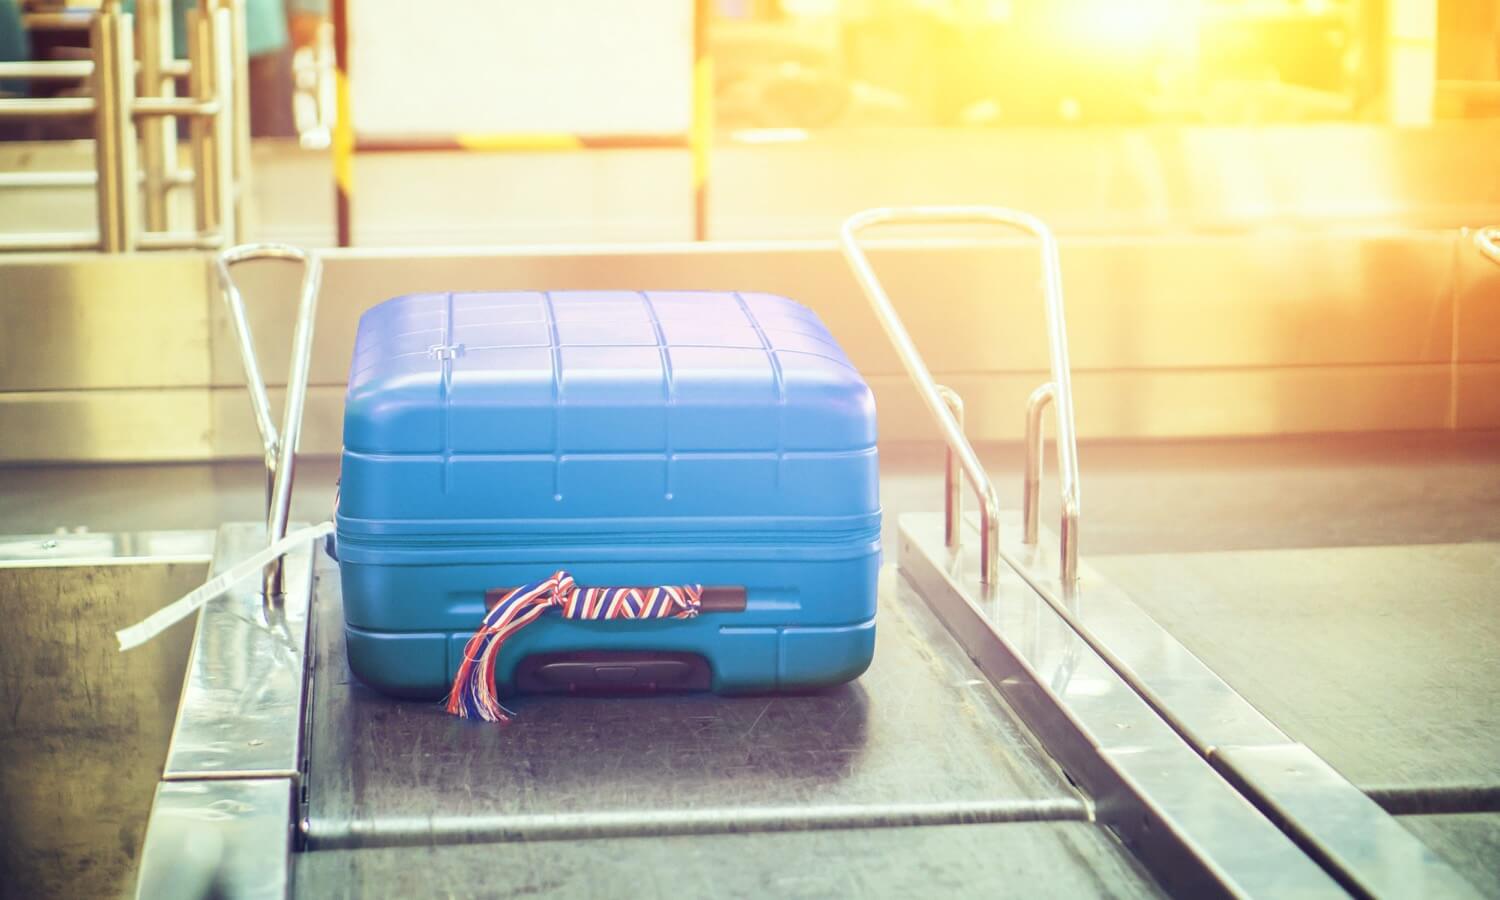 Новий додаток справляється з багажем краще роботизованого валізи